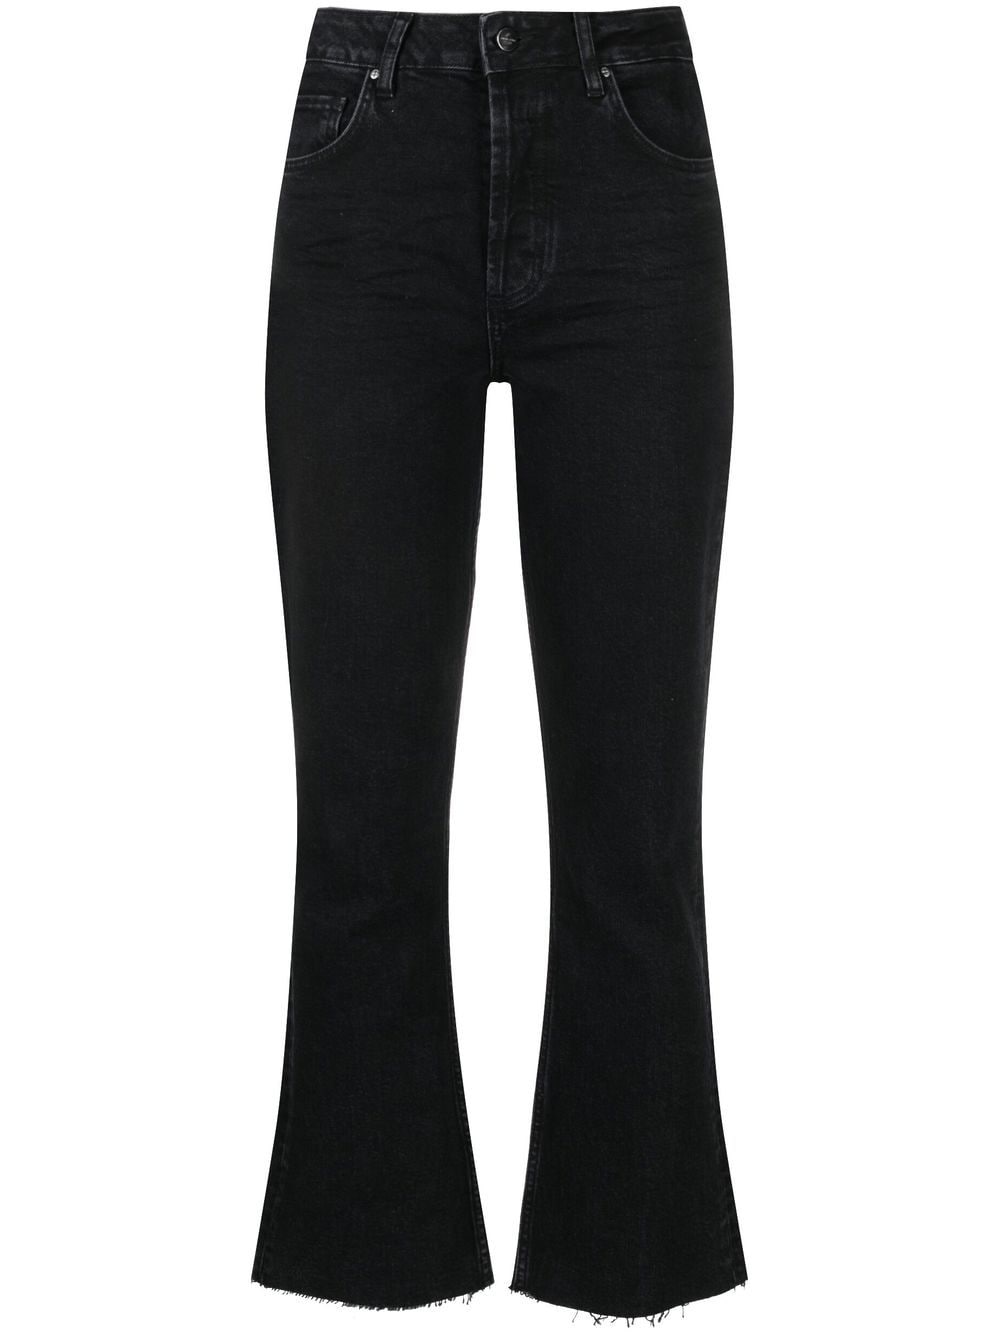 ANINE BING Lara cropped denim jeans - Black